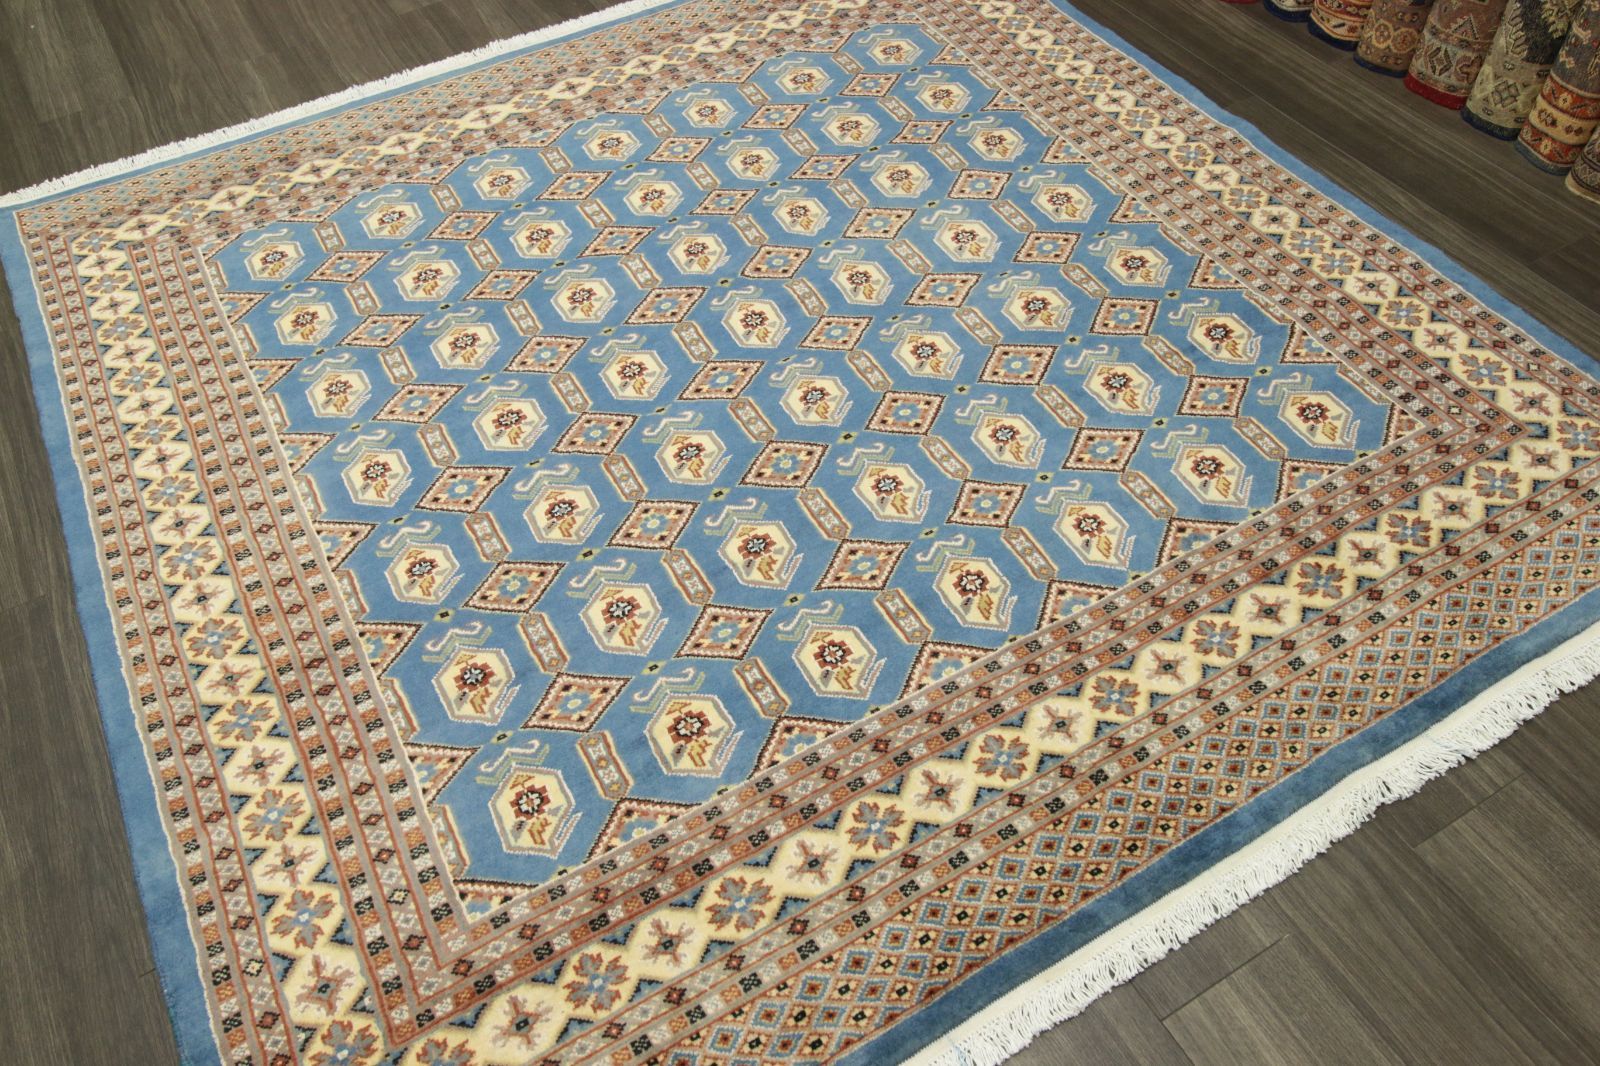 15500円特売日 アウトレットショップ パキスタン 手織り絨毯 size:97